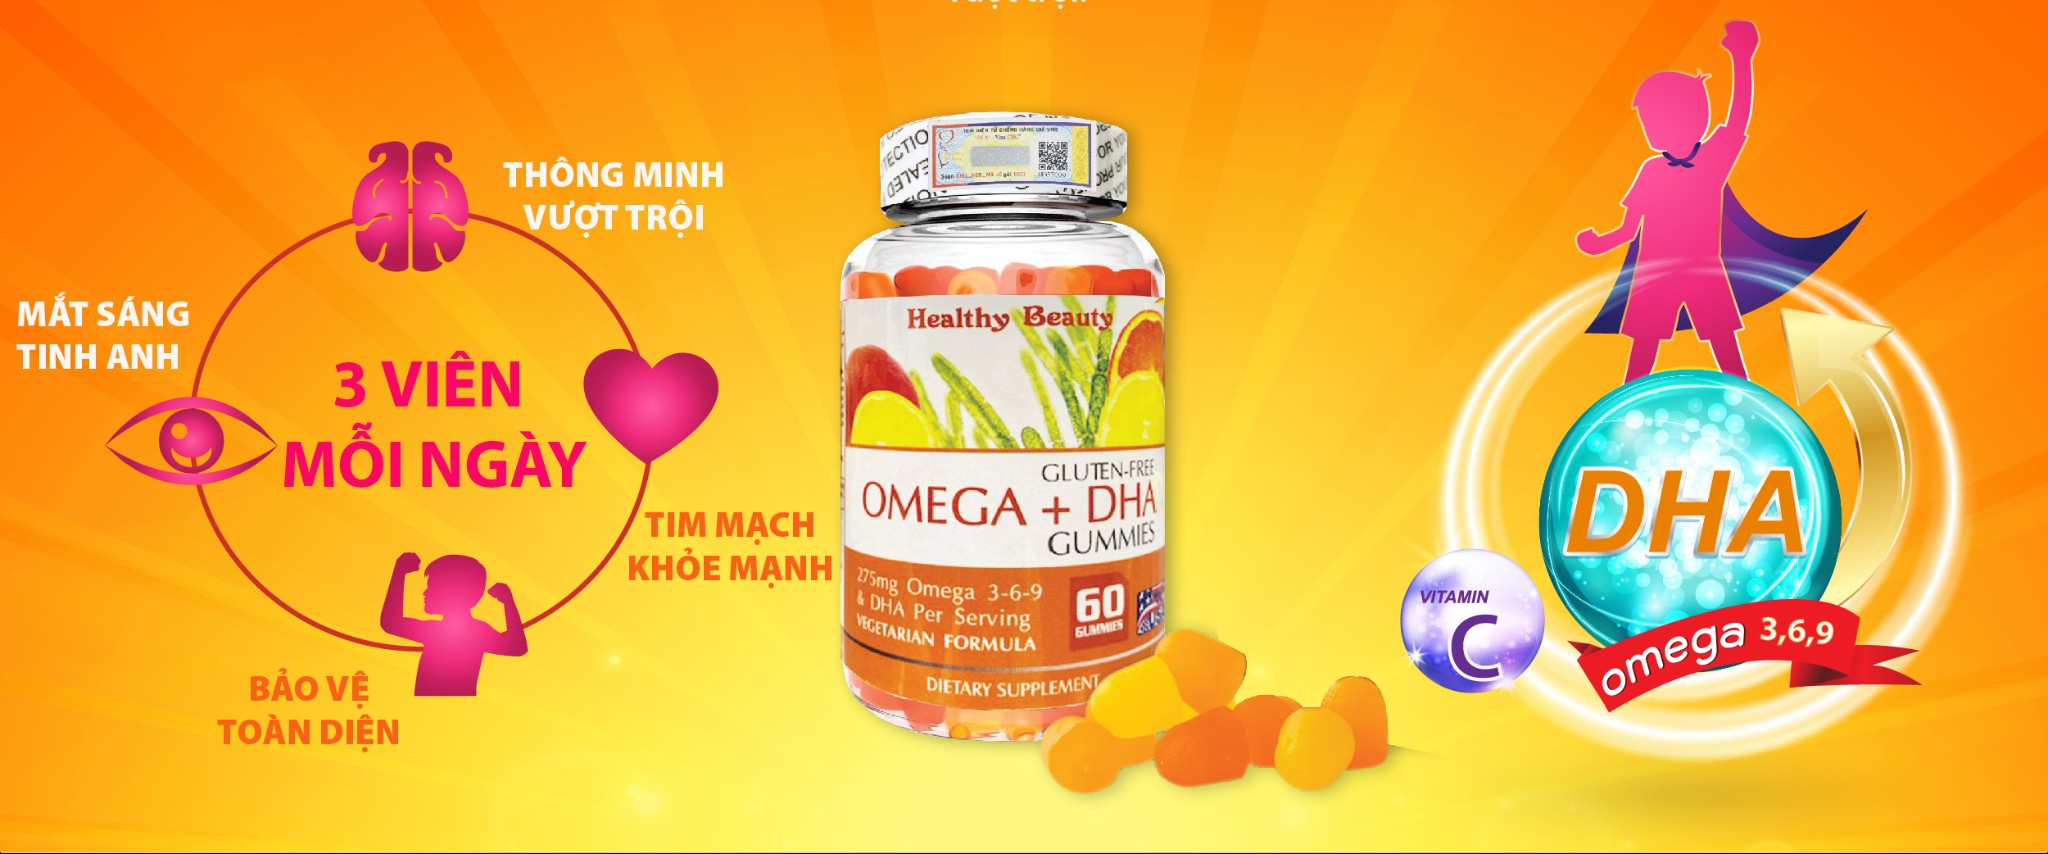 OMEGA + DHA GUMMIES GIÚP BÉ THÔNG MINH VƯỢT TRỘI MẮT SÁNG TINH ANH –  Healthy Beauty Pharma Co.,LTD